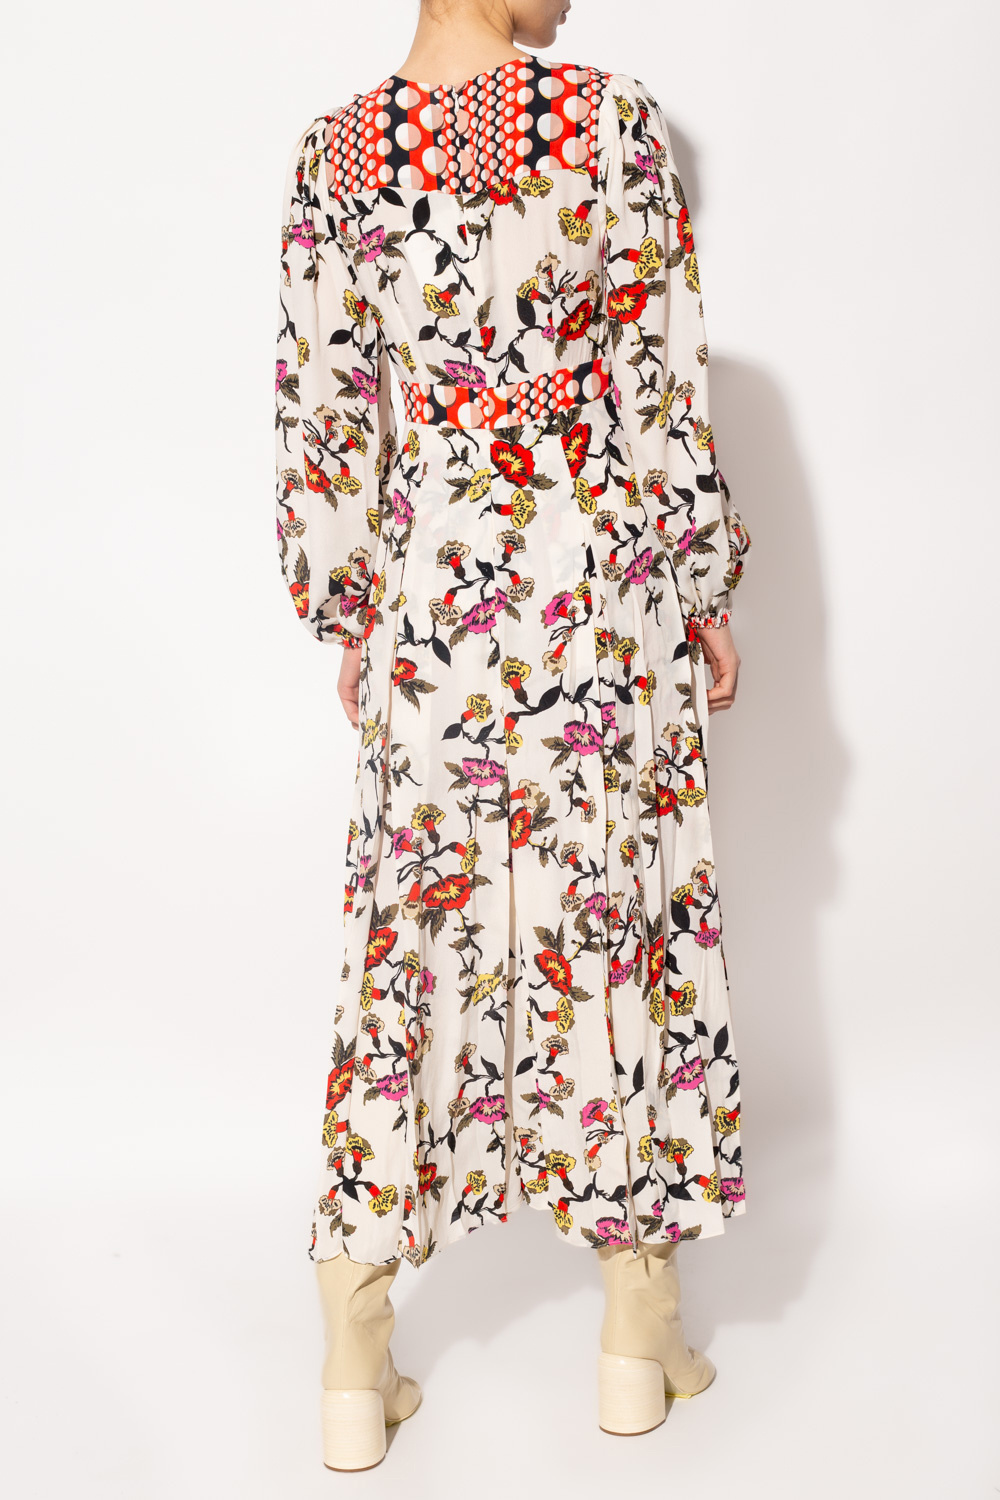 Stella Jean motif cotton dress Pleated dress